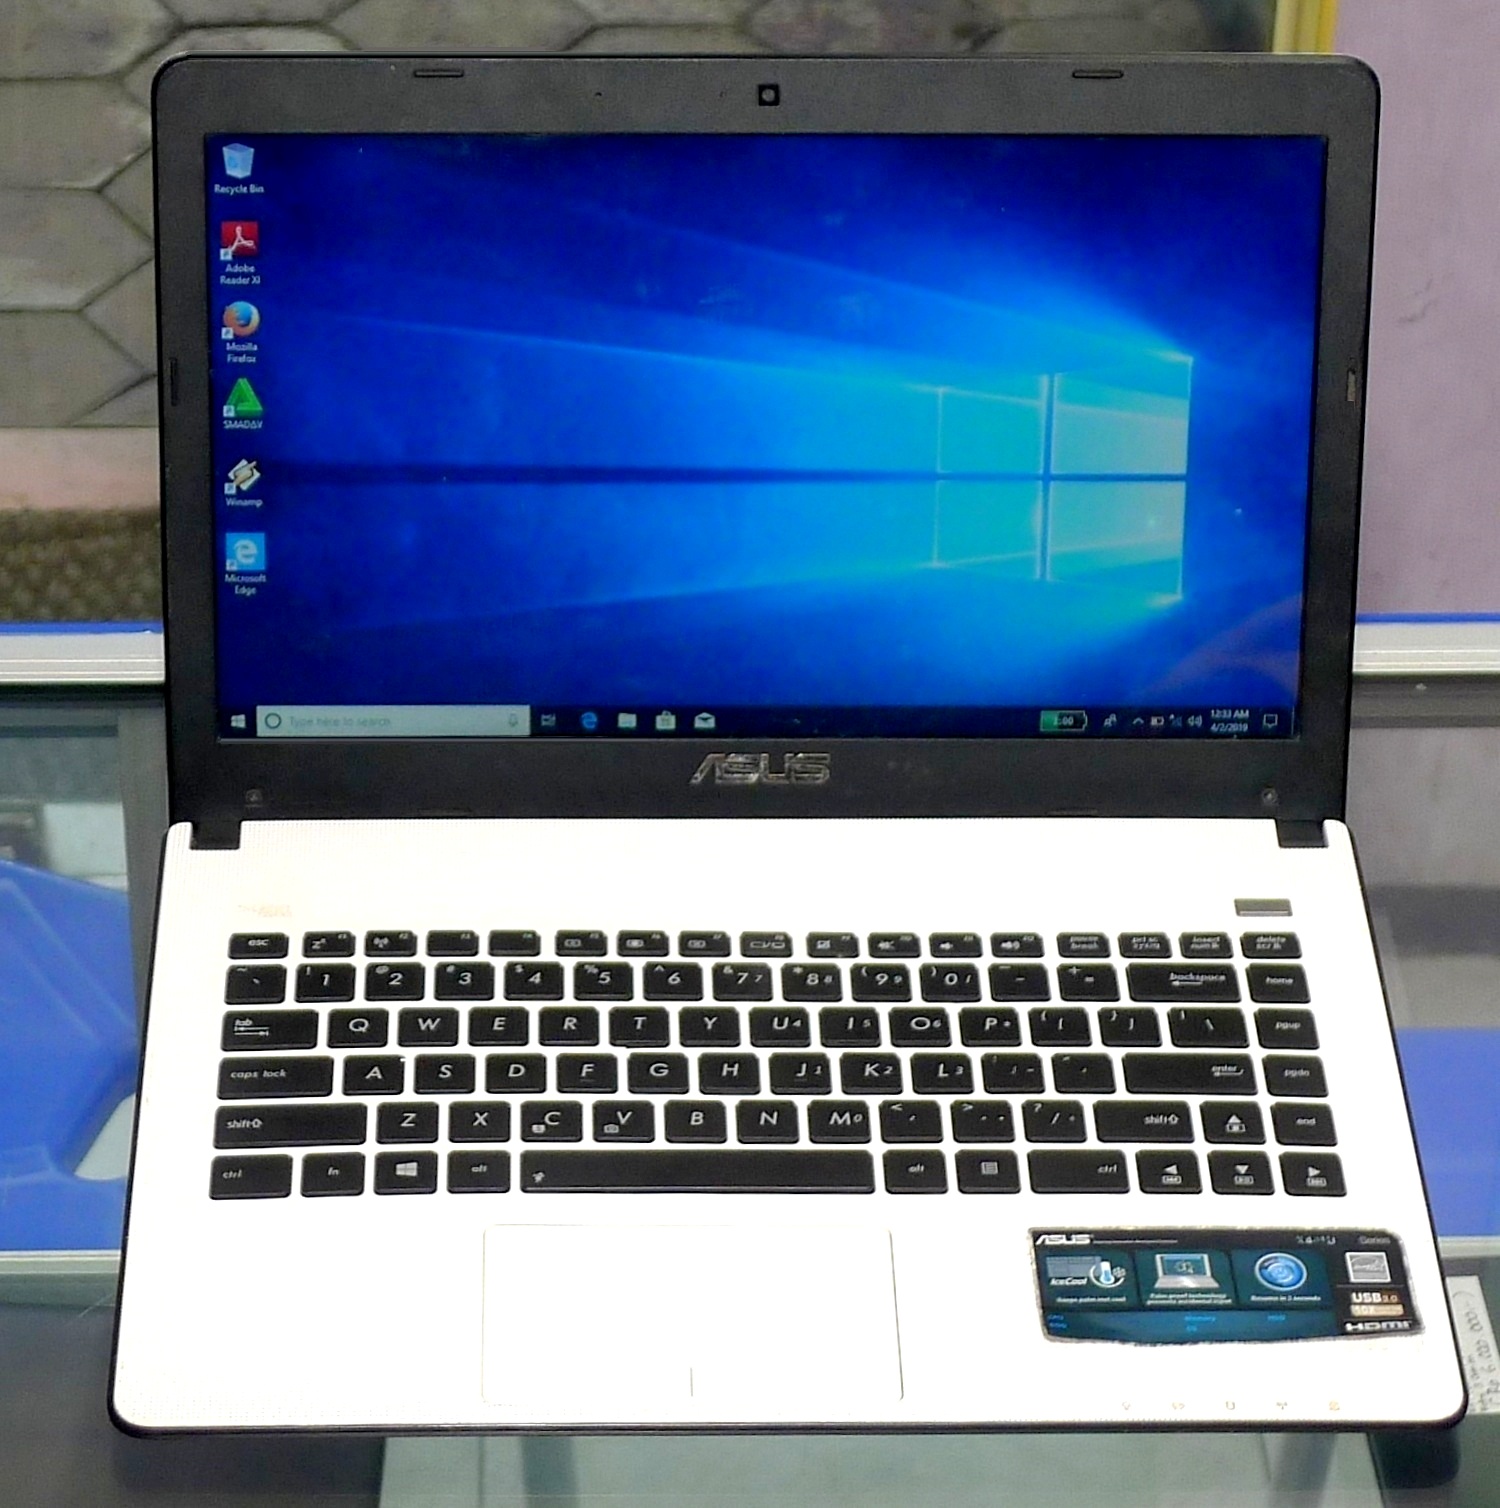 Jual Laptop ASUS X401U Second di Malang | Jual Beli Laptop Bekas